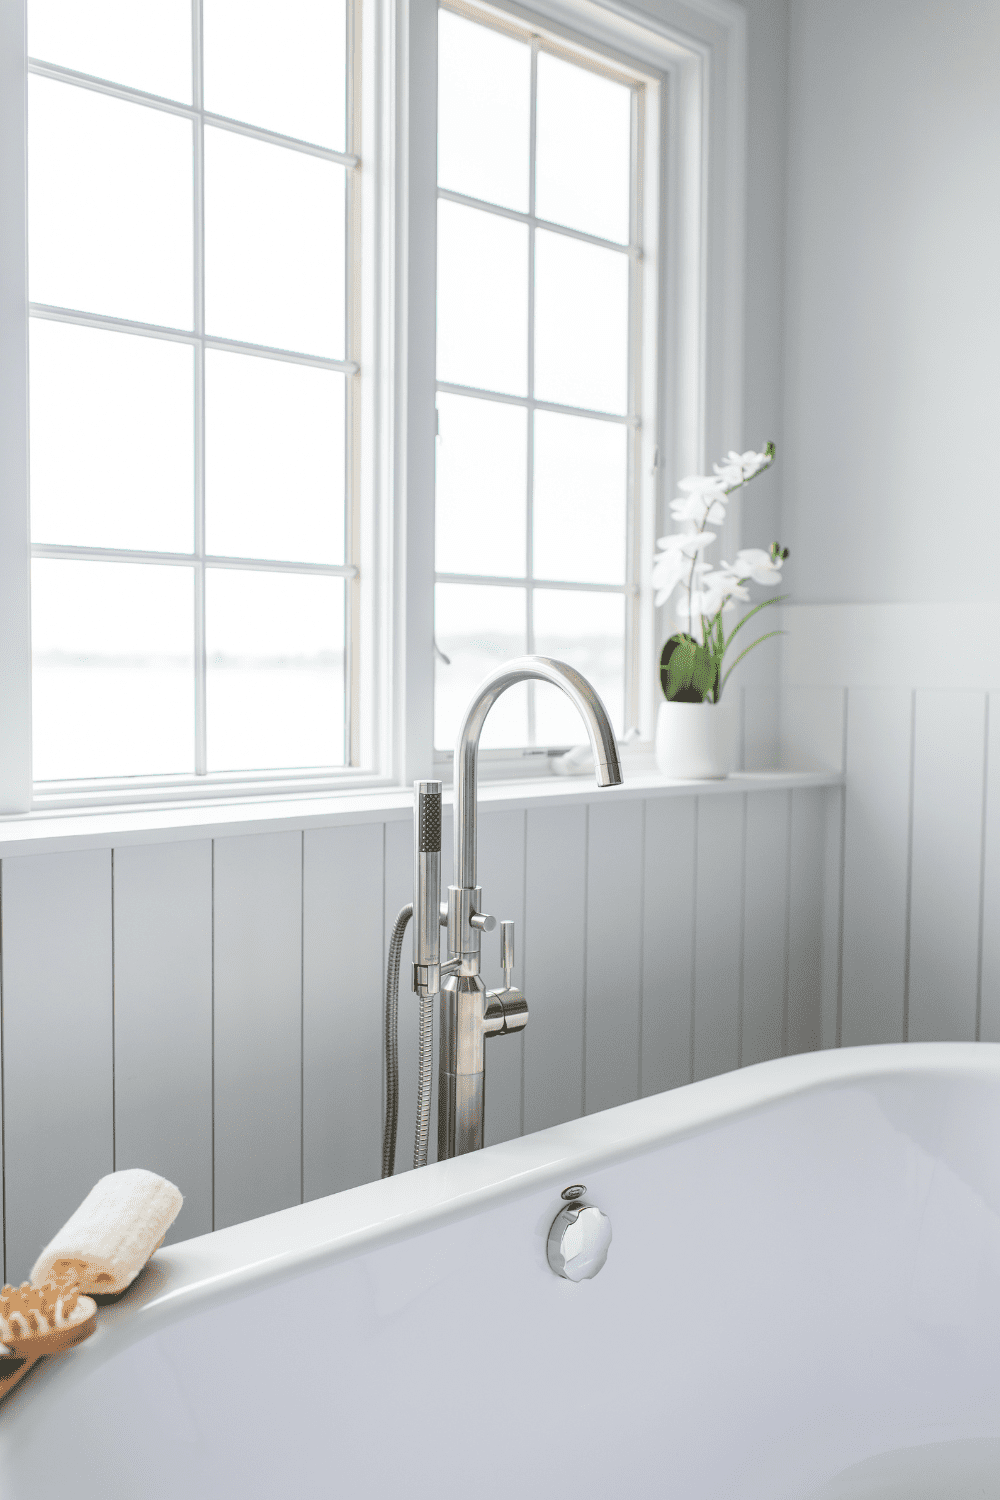 Nicholas Design Build | A white bathtub in a master bathroom with a window.